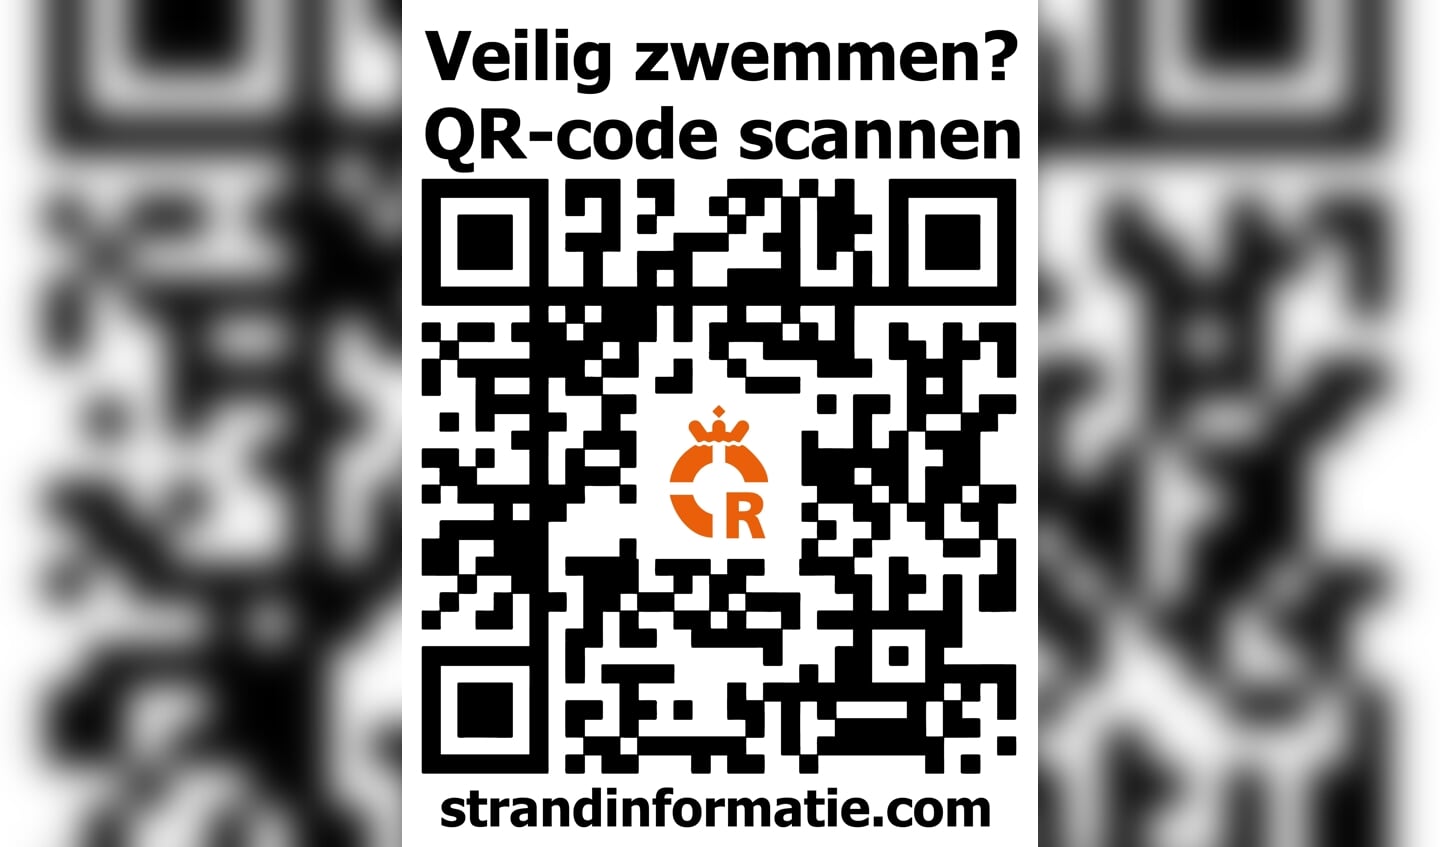 De QR code voor de site strandinformatie.com.